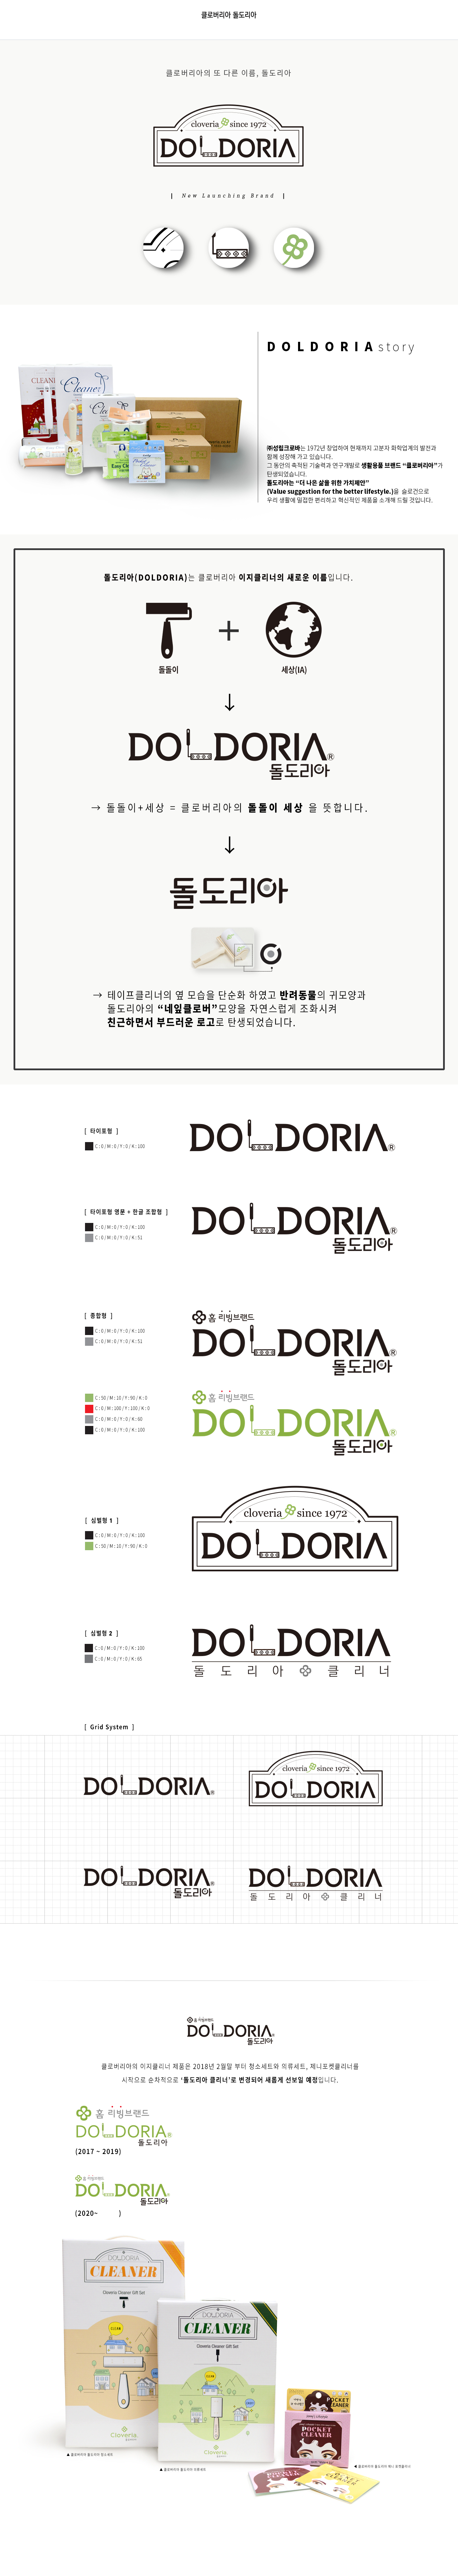 #doldoria